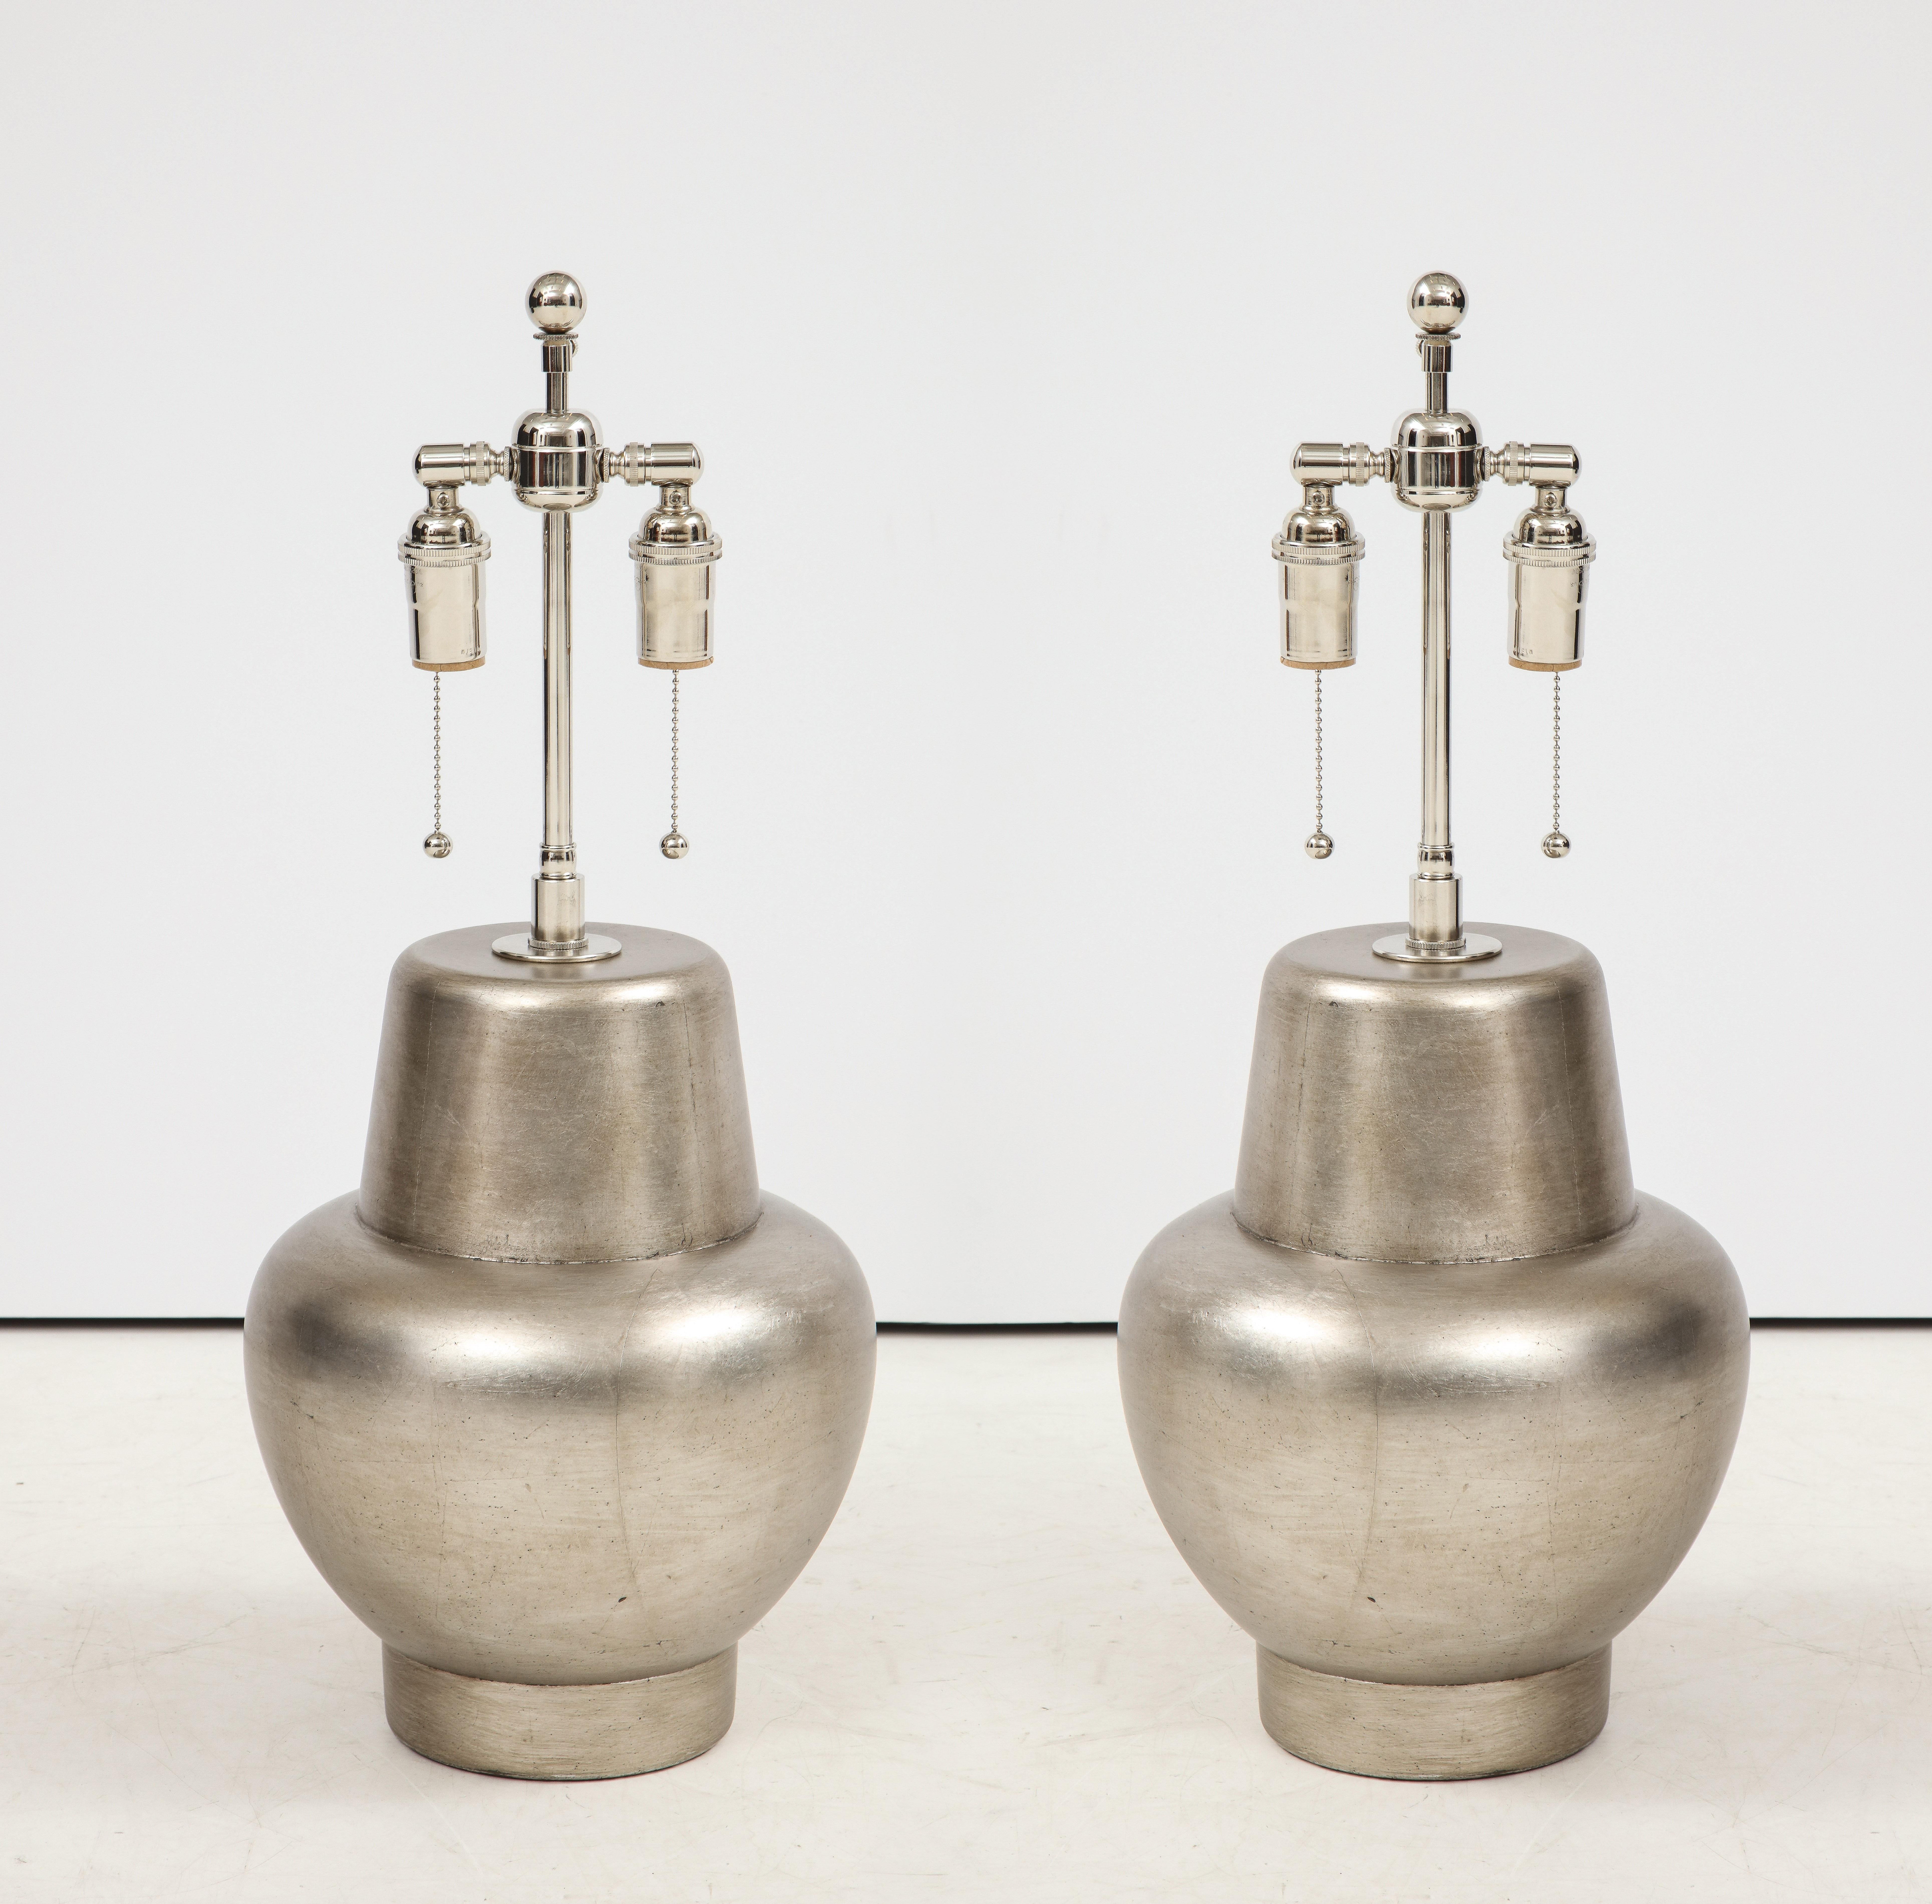 Wunderschönes Paar glasierte Lampen mit Blattsilber von James Mont.
Die Lampen wurden neu verkabelt und mit polierten Nickel-Doppelbündeln versehen.
Der Preis gilt für das Paar
  